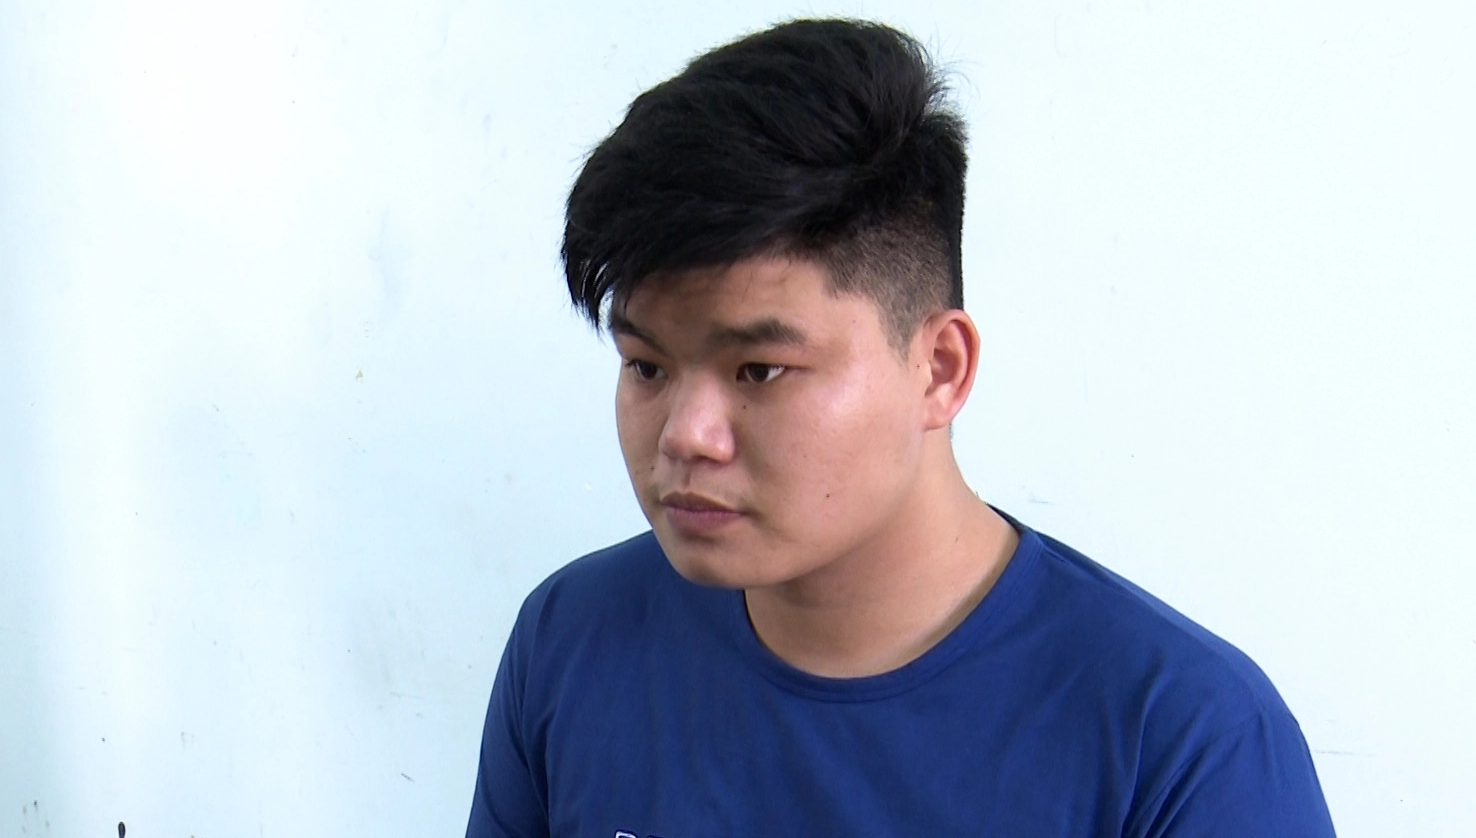 Cho vay lãi nặng 360%/năm, một thanh niên ở An Giang bị bắt - Ảnh 1.